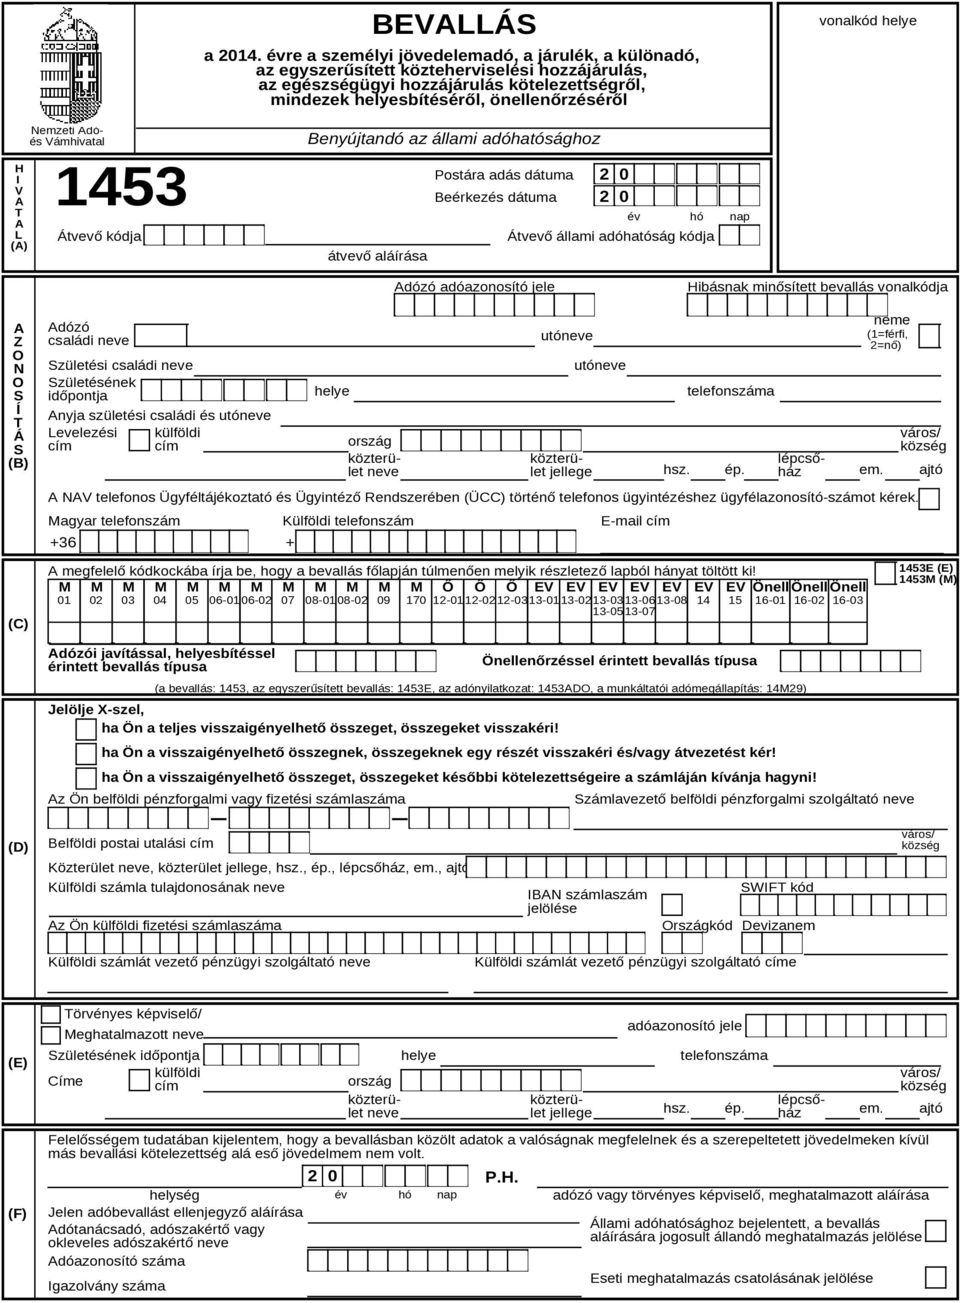 helye H I V A T A L (A) Nemzeti Adóés Vámhivatal 1453 Beérkezés Átvevő kódja Benyújtandó az állami adóhatósághoz átvevő aláírása Postára adás dátuma dátuma 2 0 2 0 év hó Átvevő állami adóhatóság